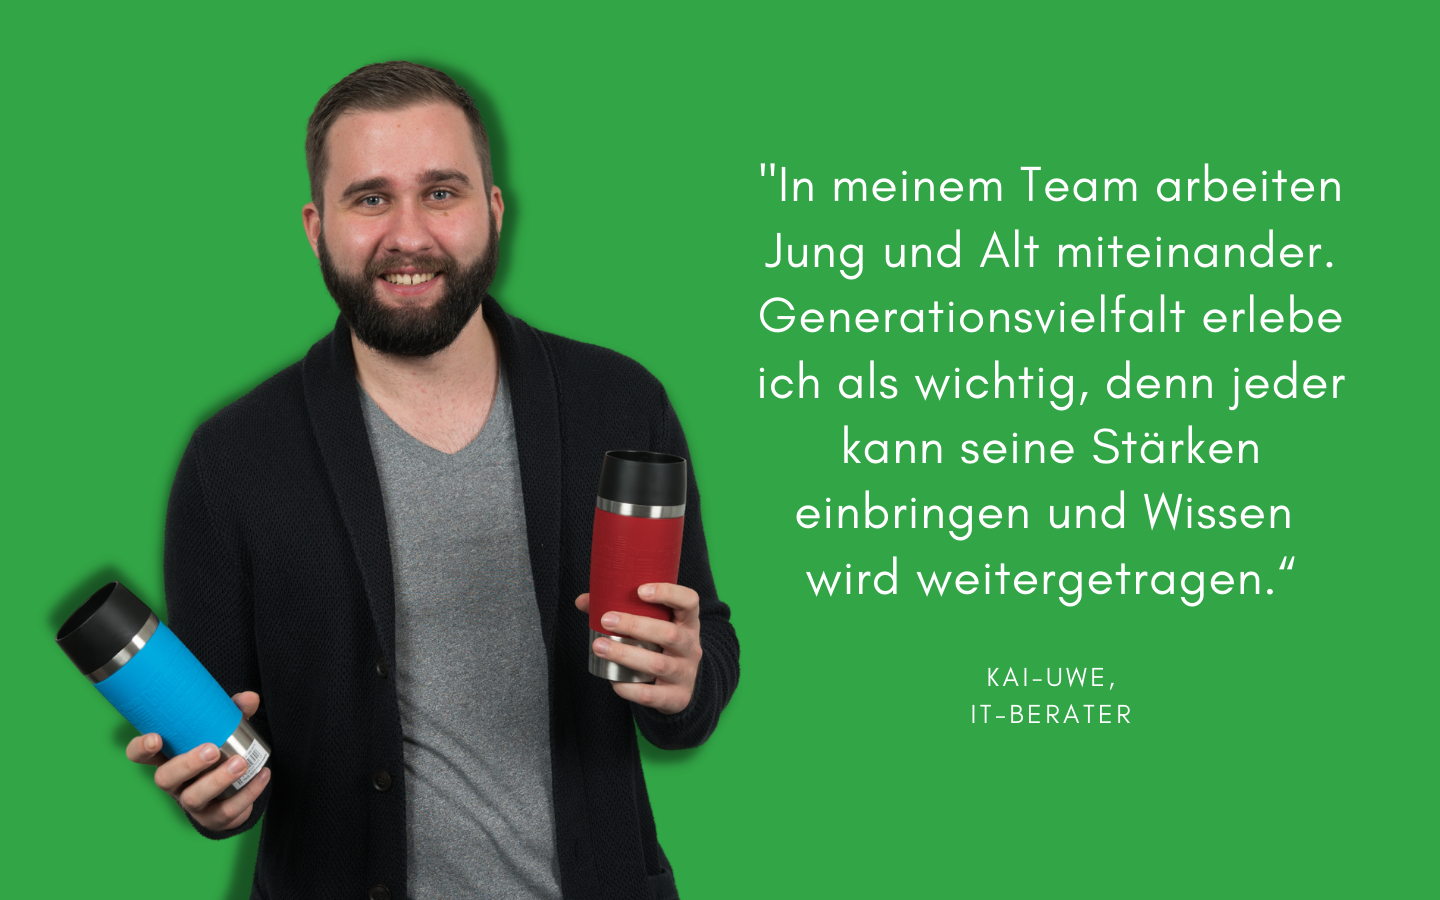 Als IT-Berater arbeitet Kai-Uwe in einem Team mit mehreren Generationen. Das empfindet er als Stärke des Teams.